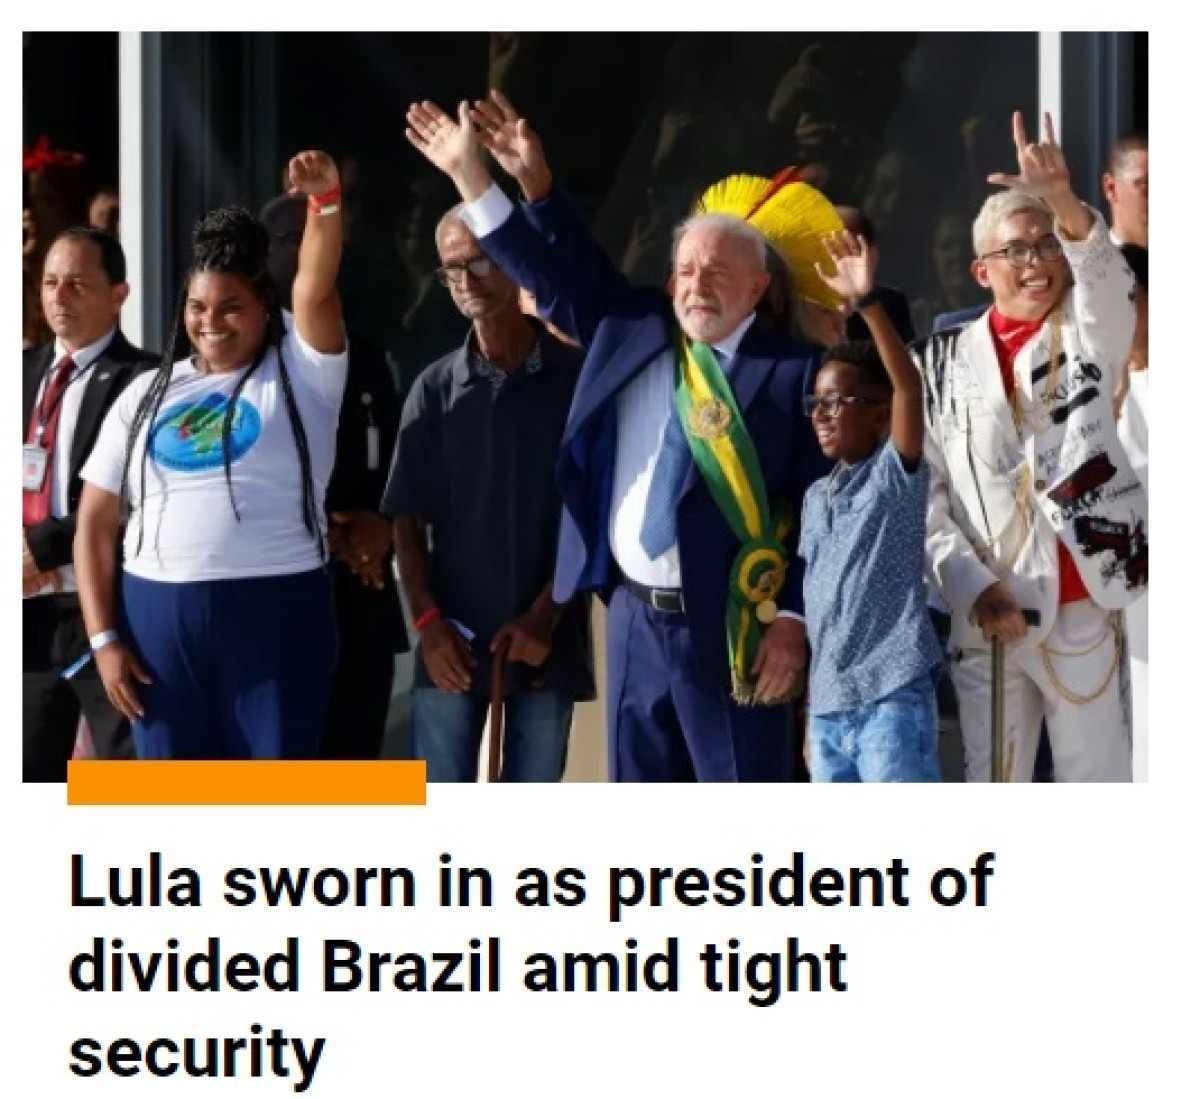 Periódicos internacionales sobre la toma de posesión de Lula